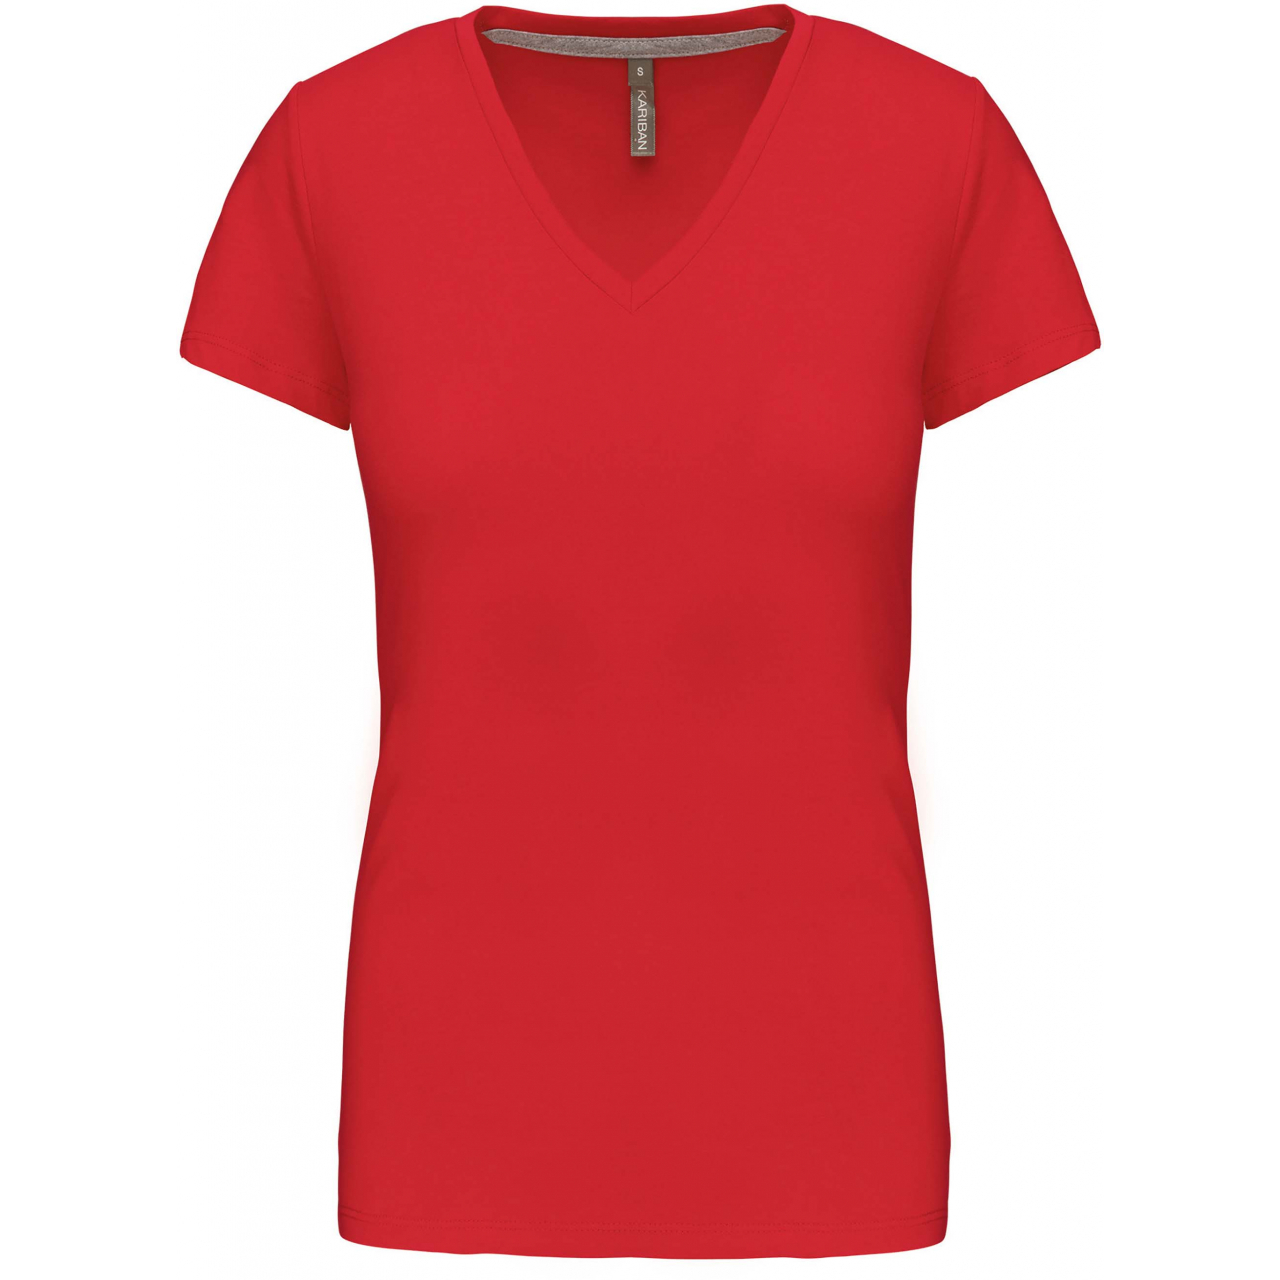 Dámské tričko Kariban V-neck s krátkým rukávem - červené, S